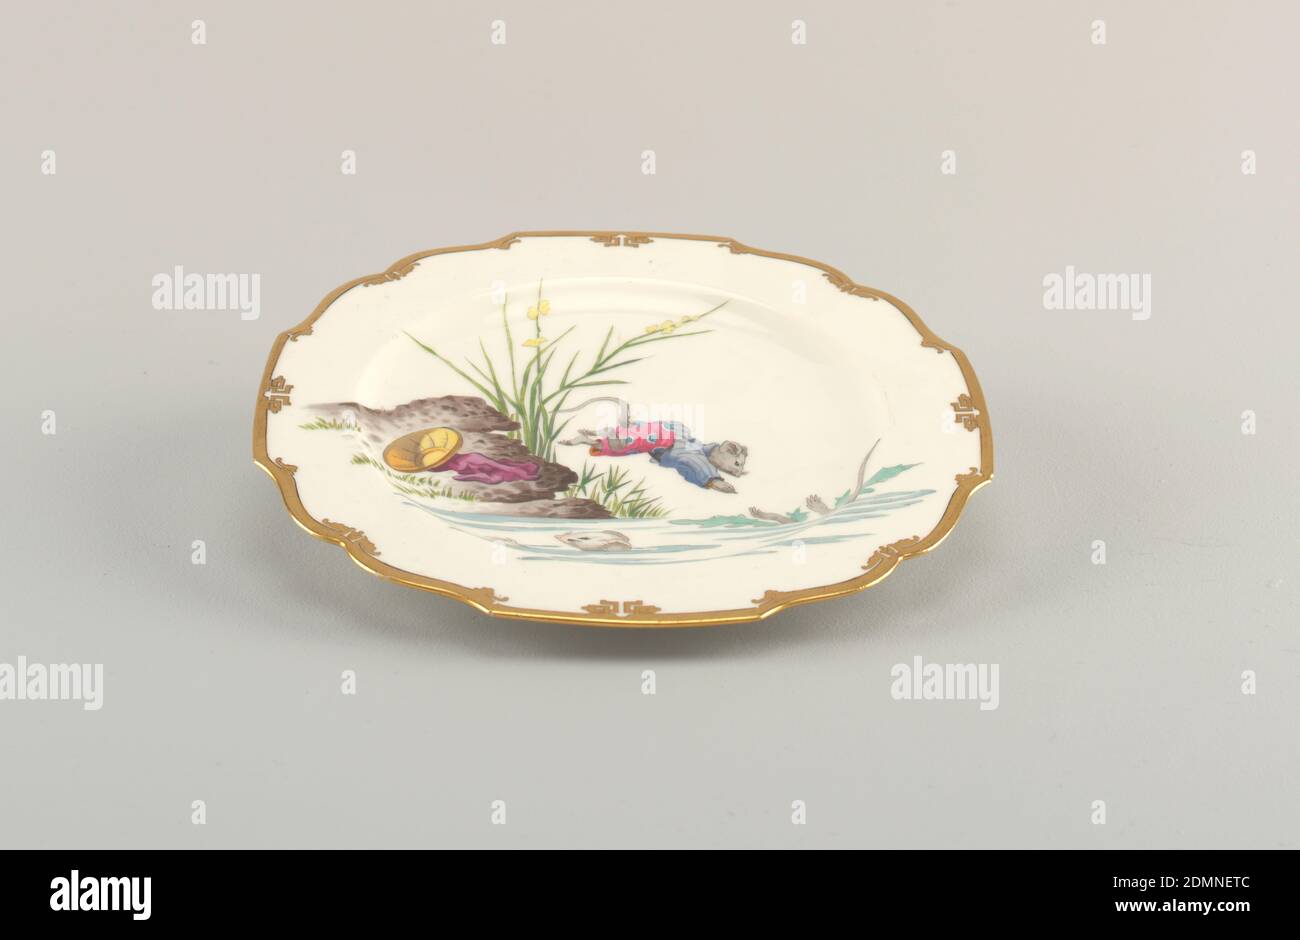 Plate, Pillivuyt & Cie, French, established ca. 1818, Porcelain, enamel decoration, Paris, France, ca. 1880, ceramics, Decorative Arts, Plate Stock Photo